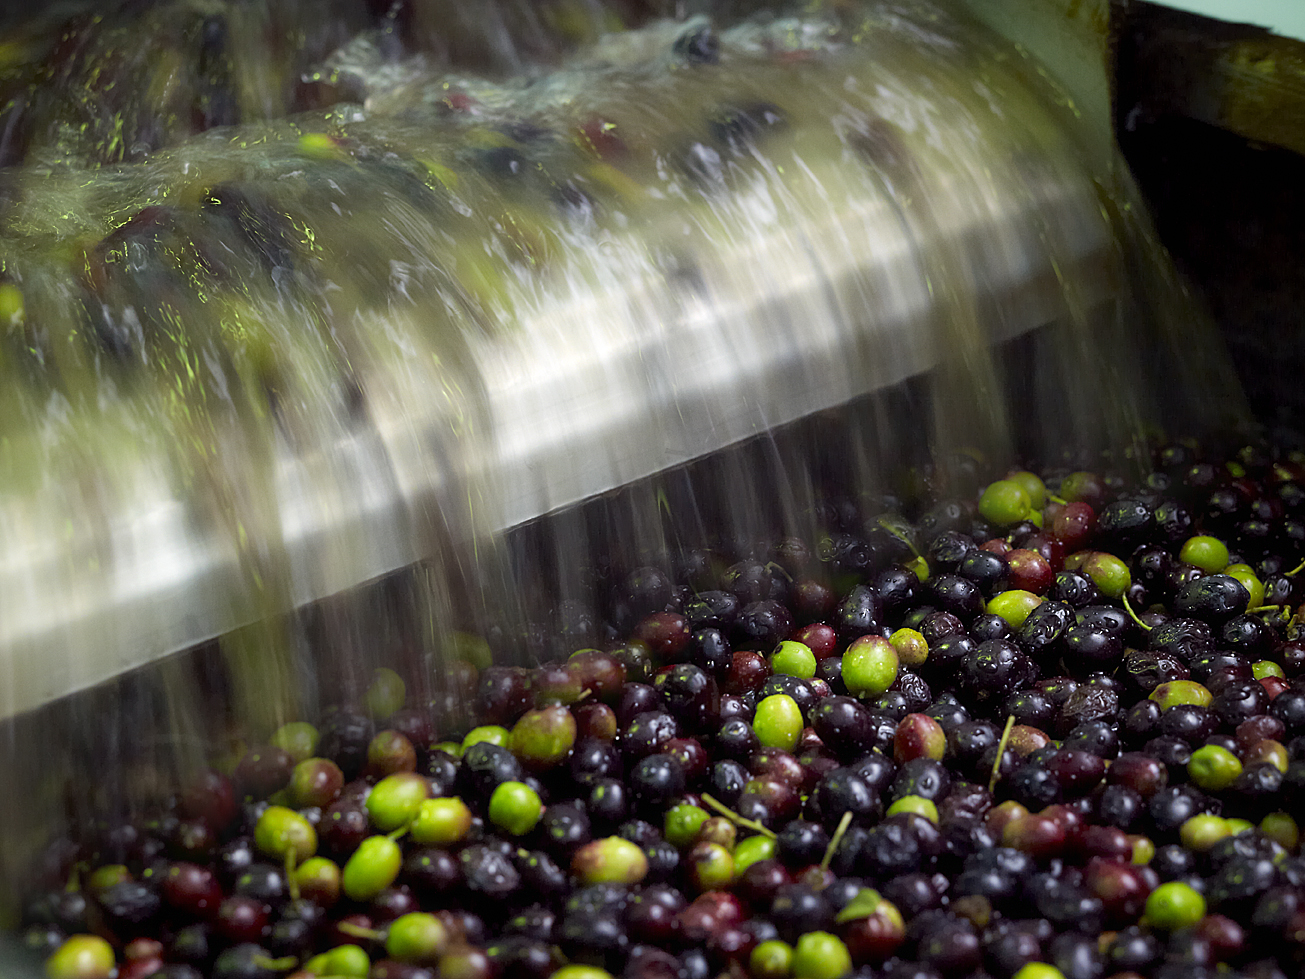 Une fois triées, les olives sont lavées pour les débarrasser de leurs impuretés